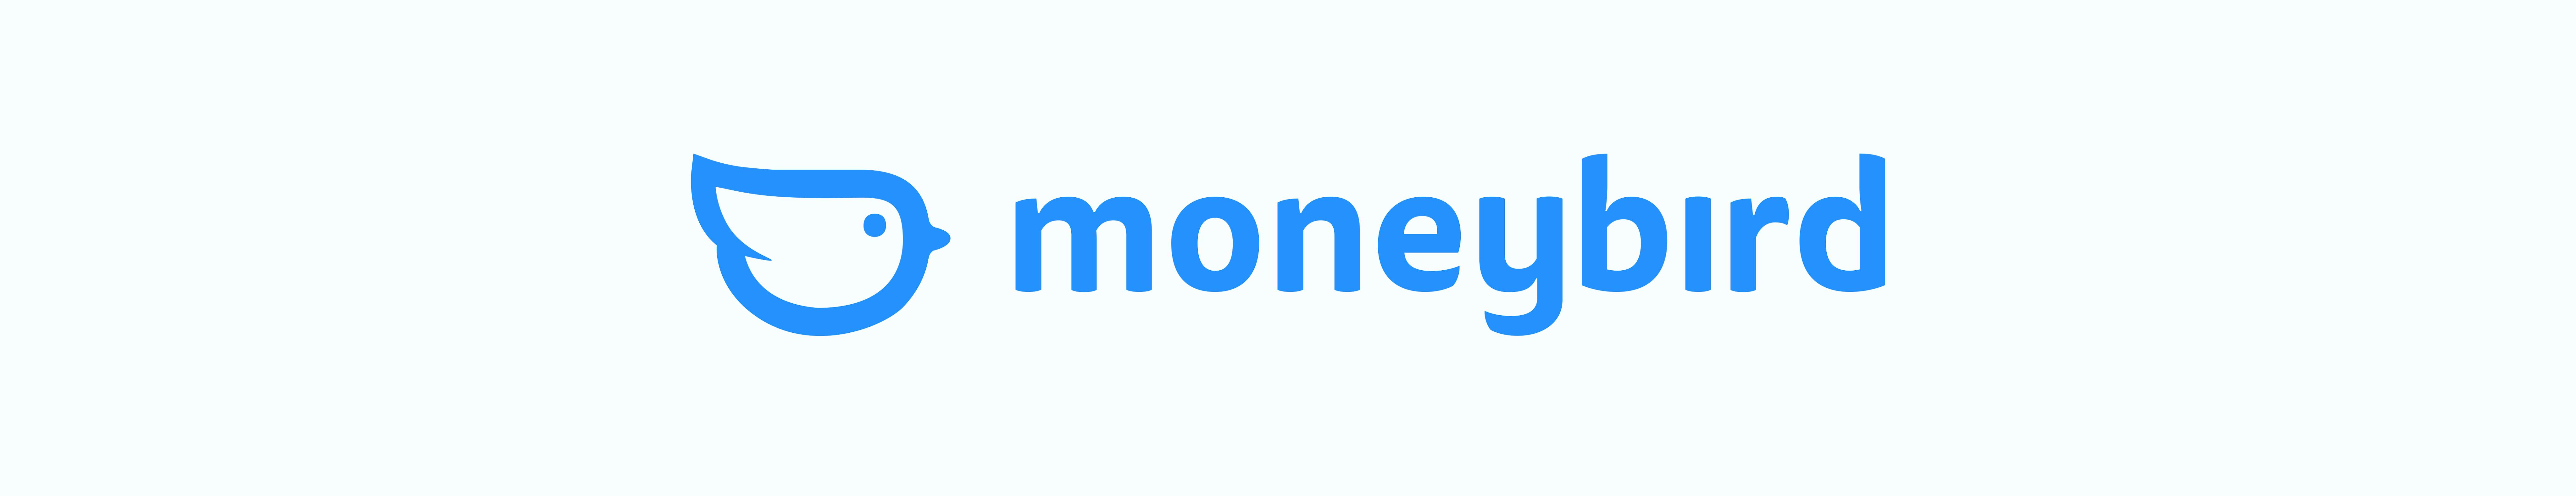 Moneybird logo